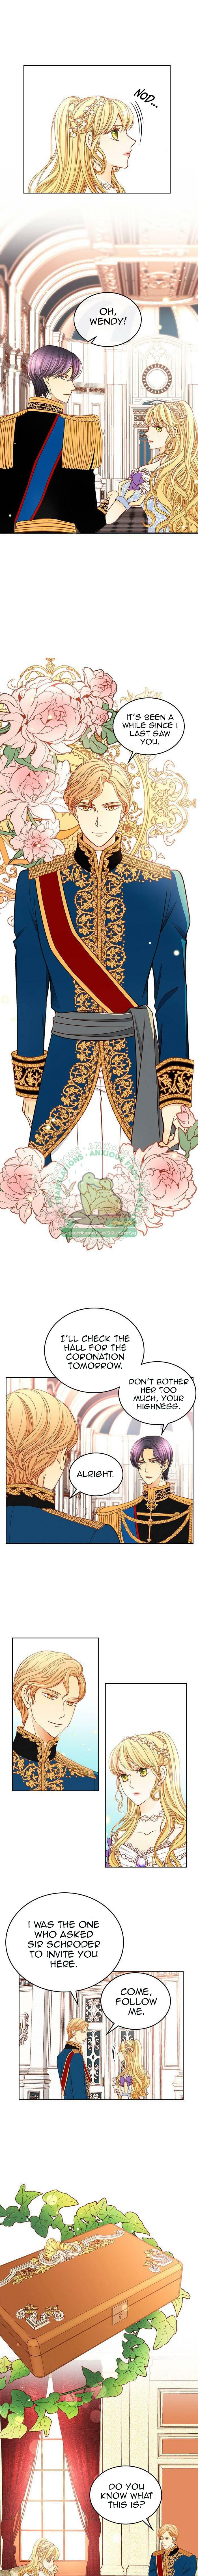 Wendy The Florist Chapter 64 page 4 - Mangakakalot